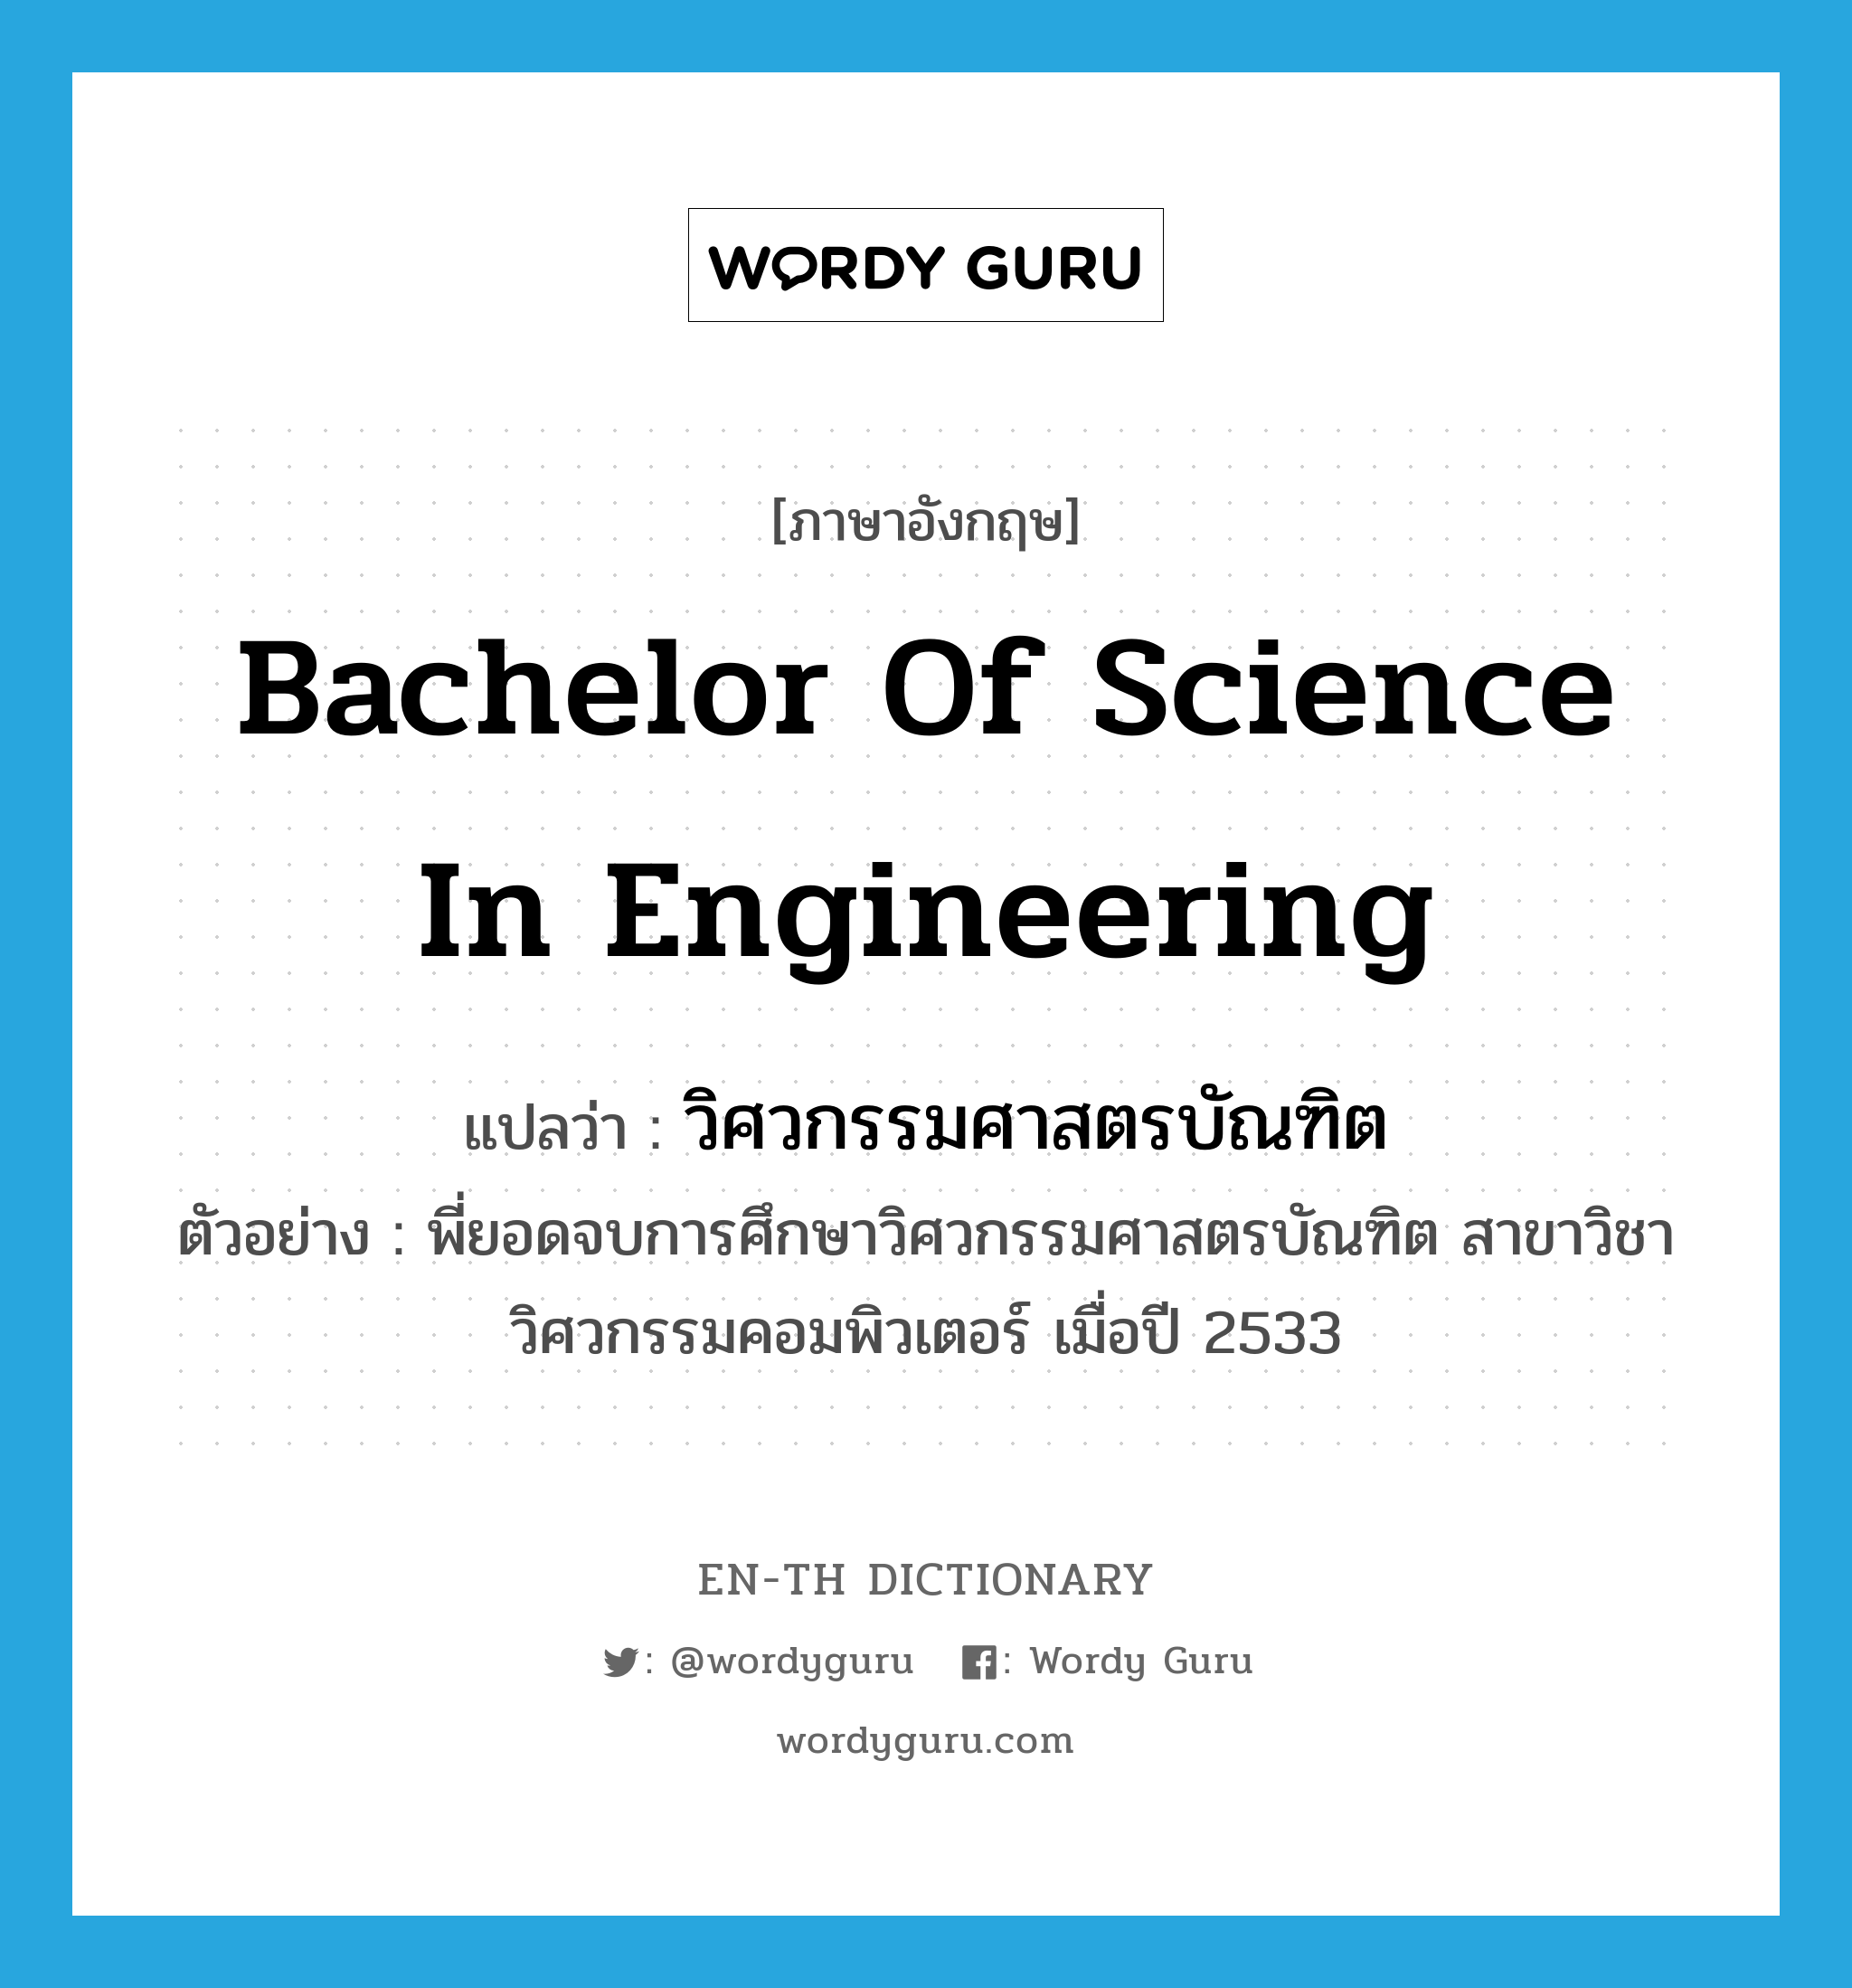 Bachelor of Science in Engineering แปลว่า?, คำศัพท์ภาษาอังกฤษ Bachelor of Science in Engineering แปลว่า วิศวกรรมศาสตรบัณฑิต ประเภท N ตัวอย่าง พี่ยอดจบการศึกษาวิศวกรรมศาสตรบัณฑิต สาขาวิชาวิศวกรรมคอมพิวเตอร์ เมื่อปี 2533 หมวด N